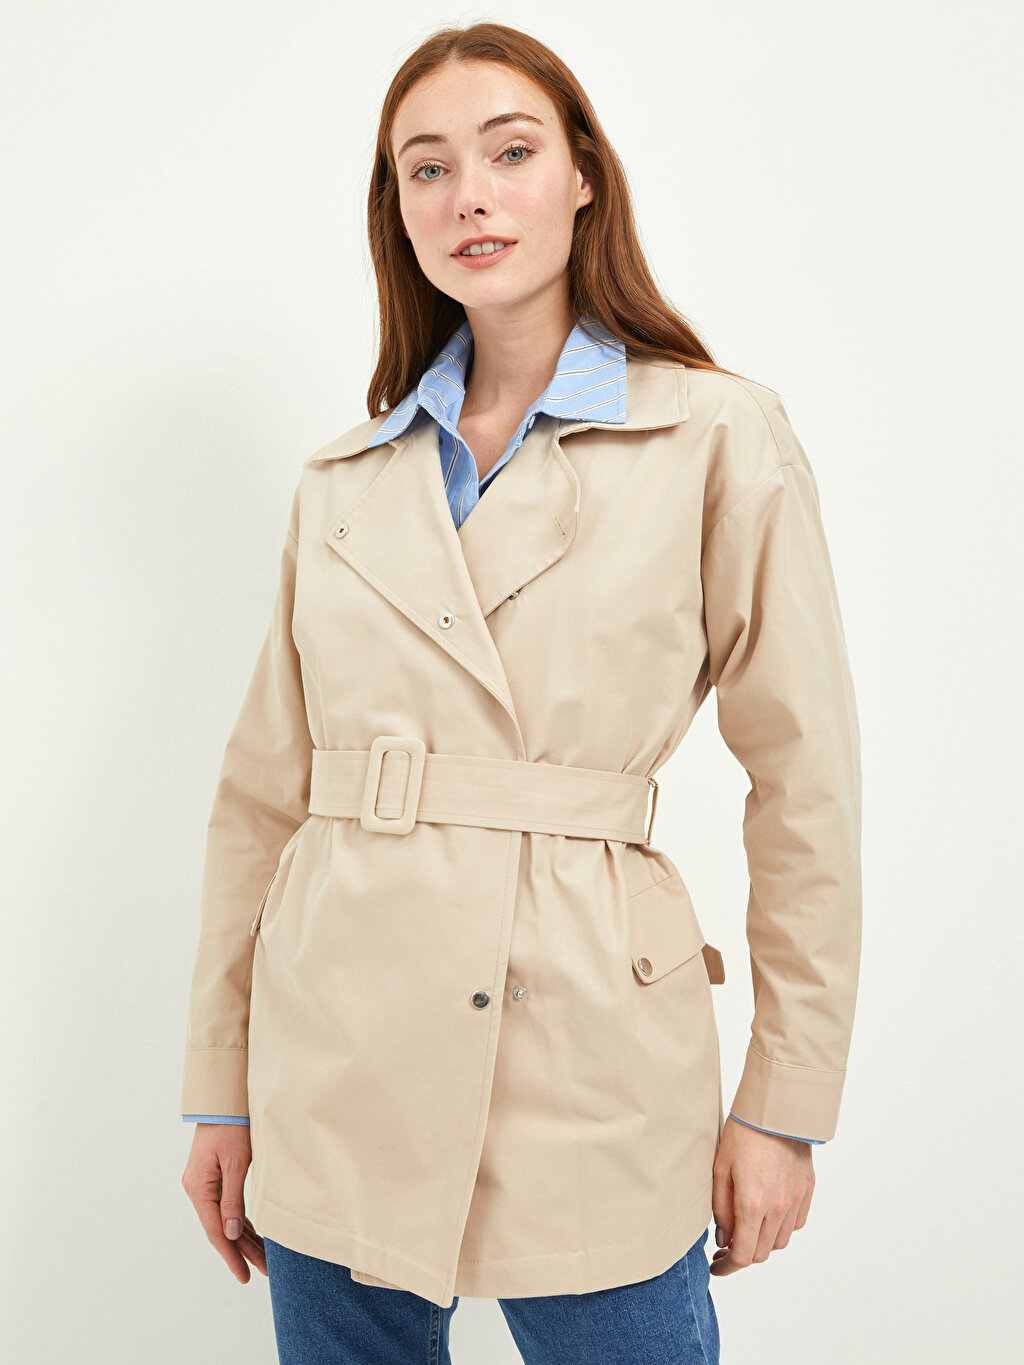 Jacket Collar Straight Long Sleeve Pocket Detailed Women's Slim Trench Coat  -W1EV98Z8-FKU - W1EV98Z8-FKU - LC Waikiki